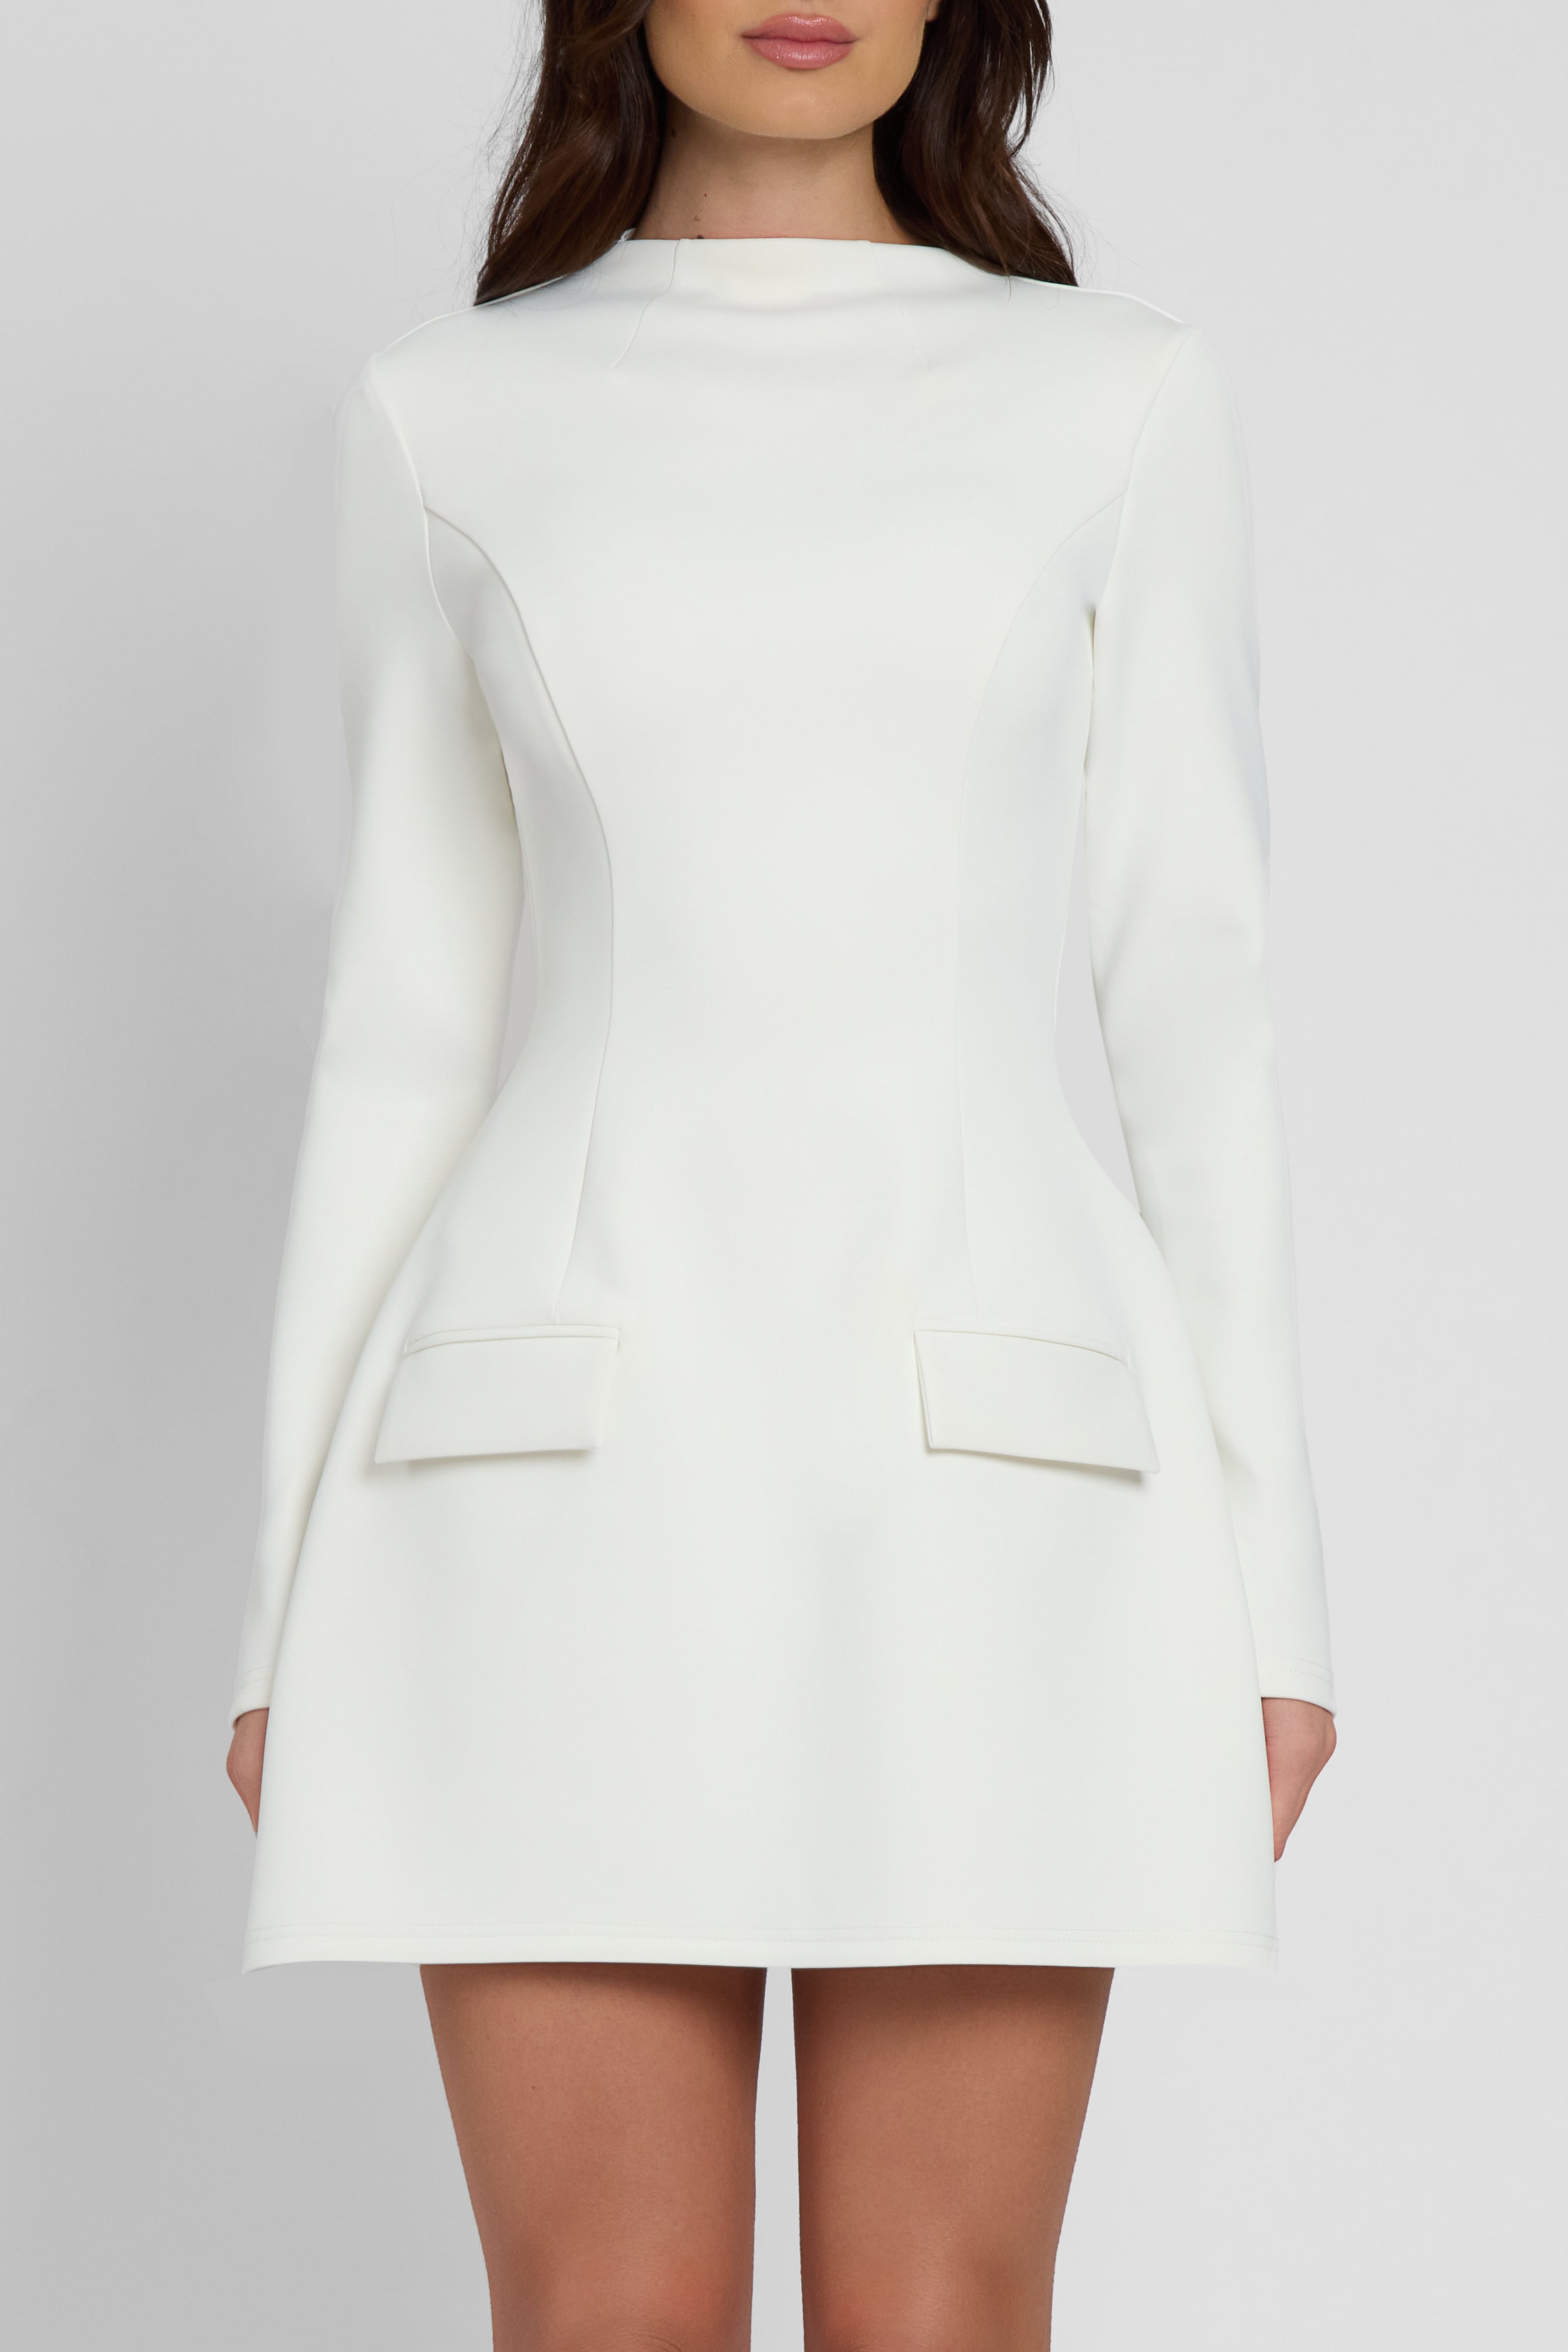 Logan Long Sleeve Pocket Mini Dress - White